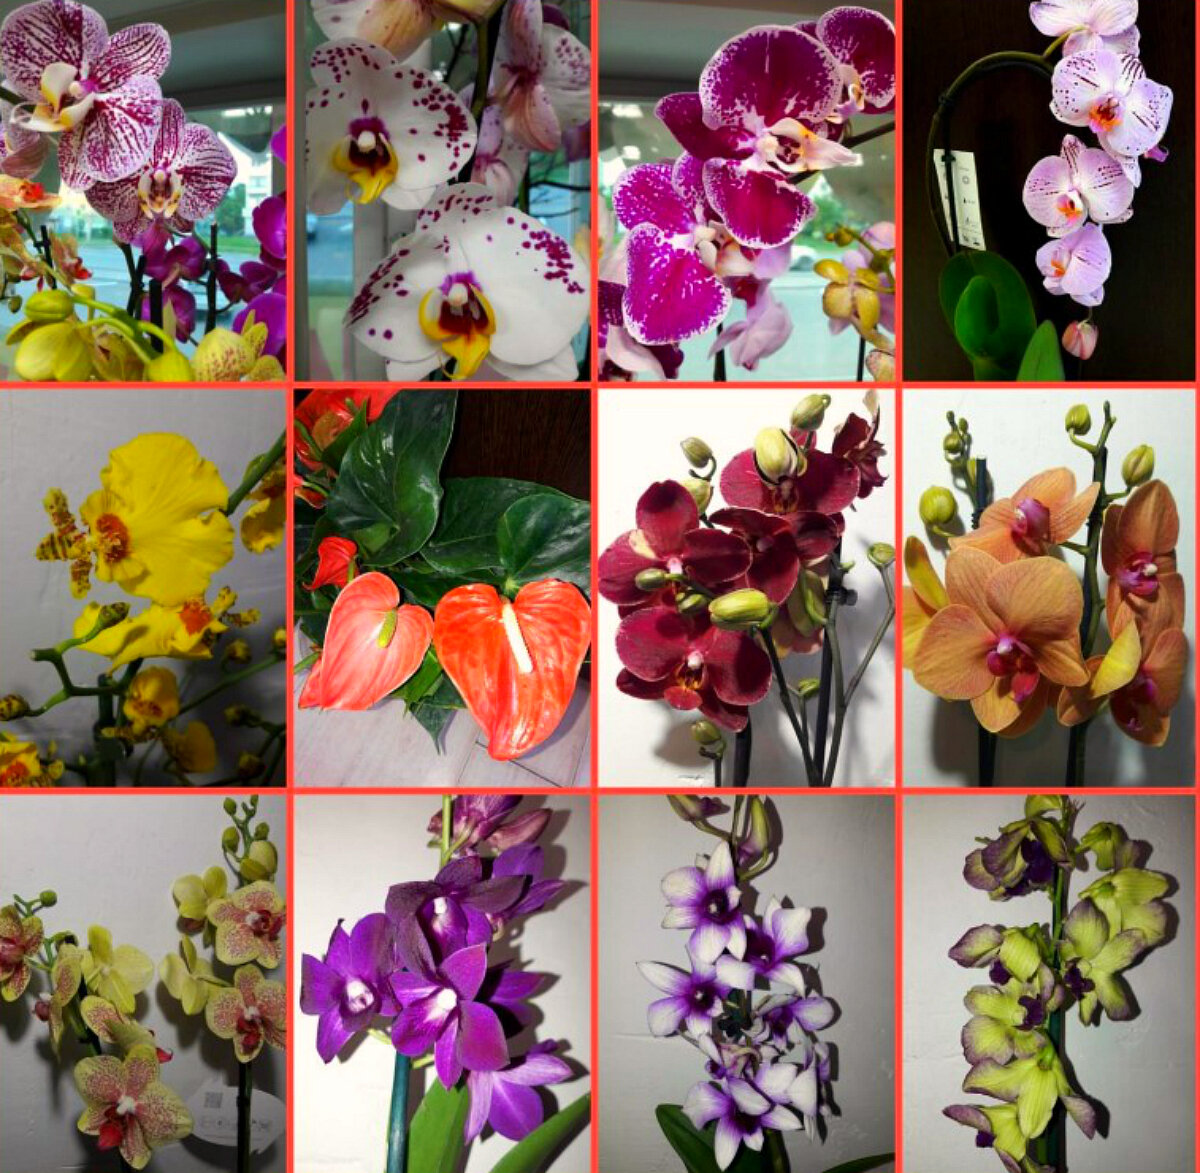 Название орхидей фаленопсис с фото по цветам